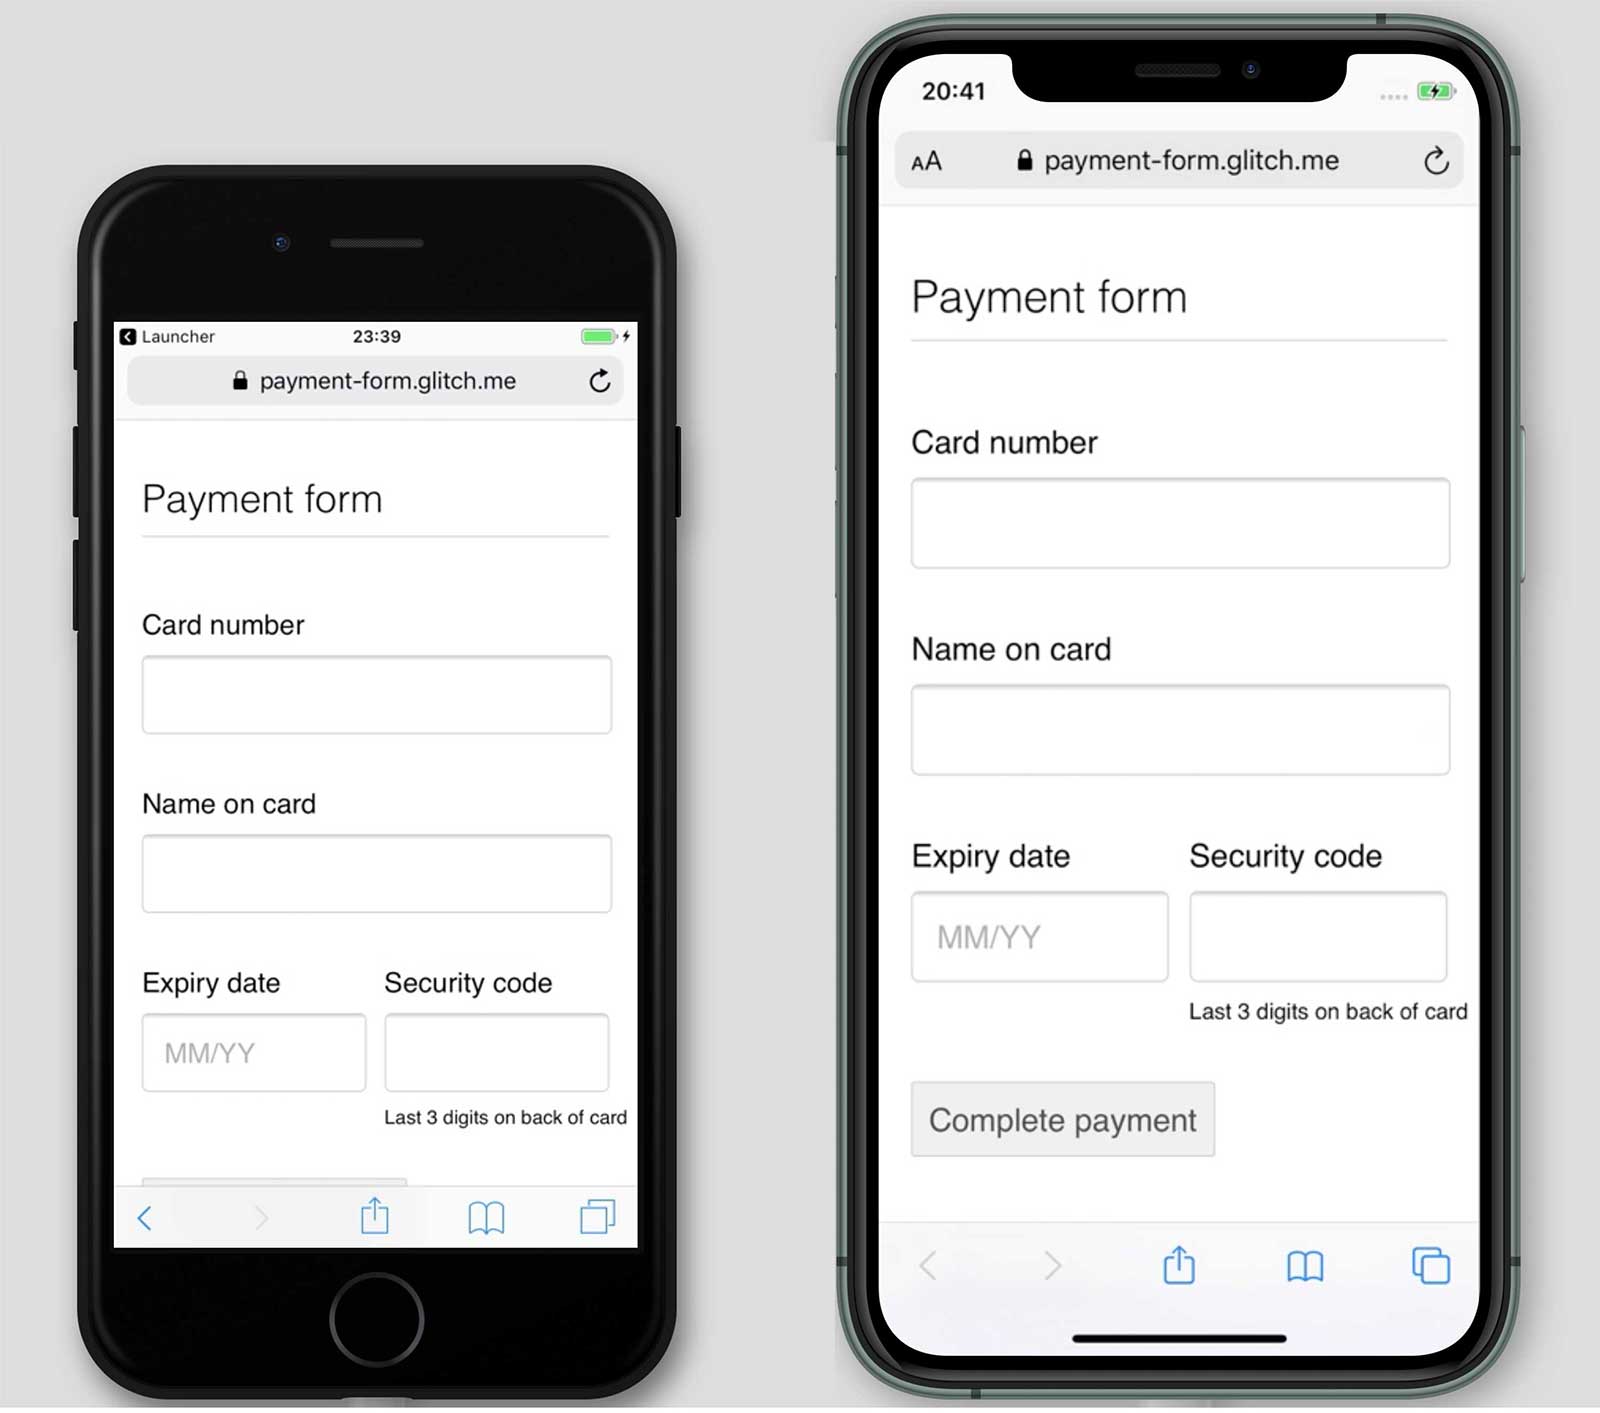 Capturas de pantalla de un formulario de pago, payment-form.glitch.me, en iPhone 7 y 11. El botón de pago completo se muestra en el iPhone 11 pero no se muestra en el iPhone 7